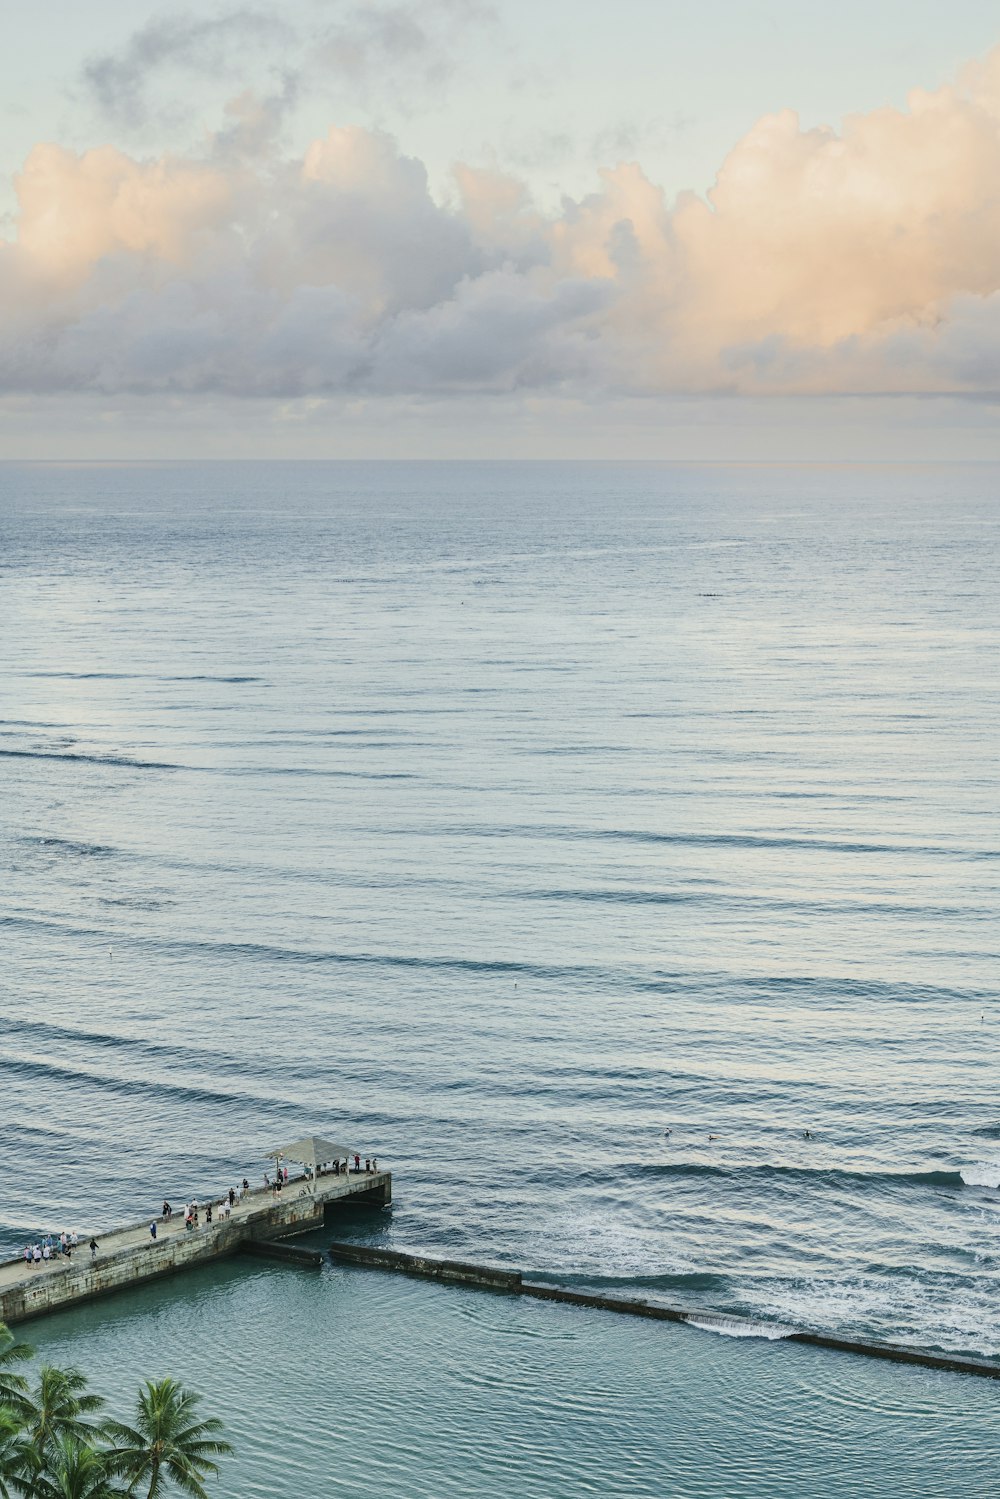 Un groupe de personnes debout sur une jetée au bord de l’océan